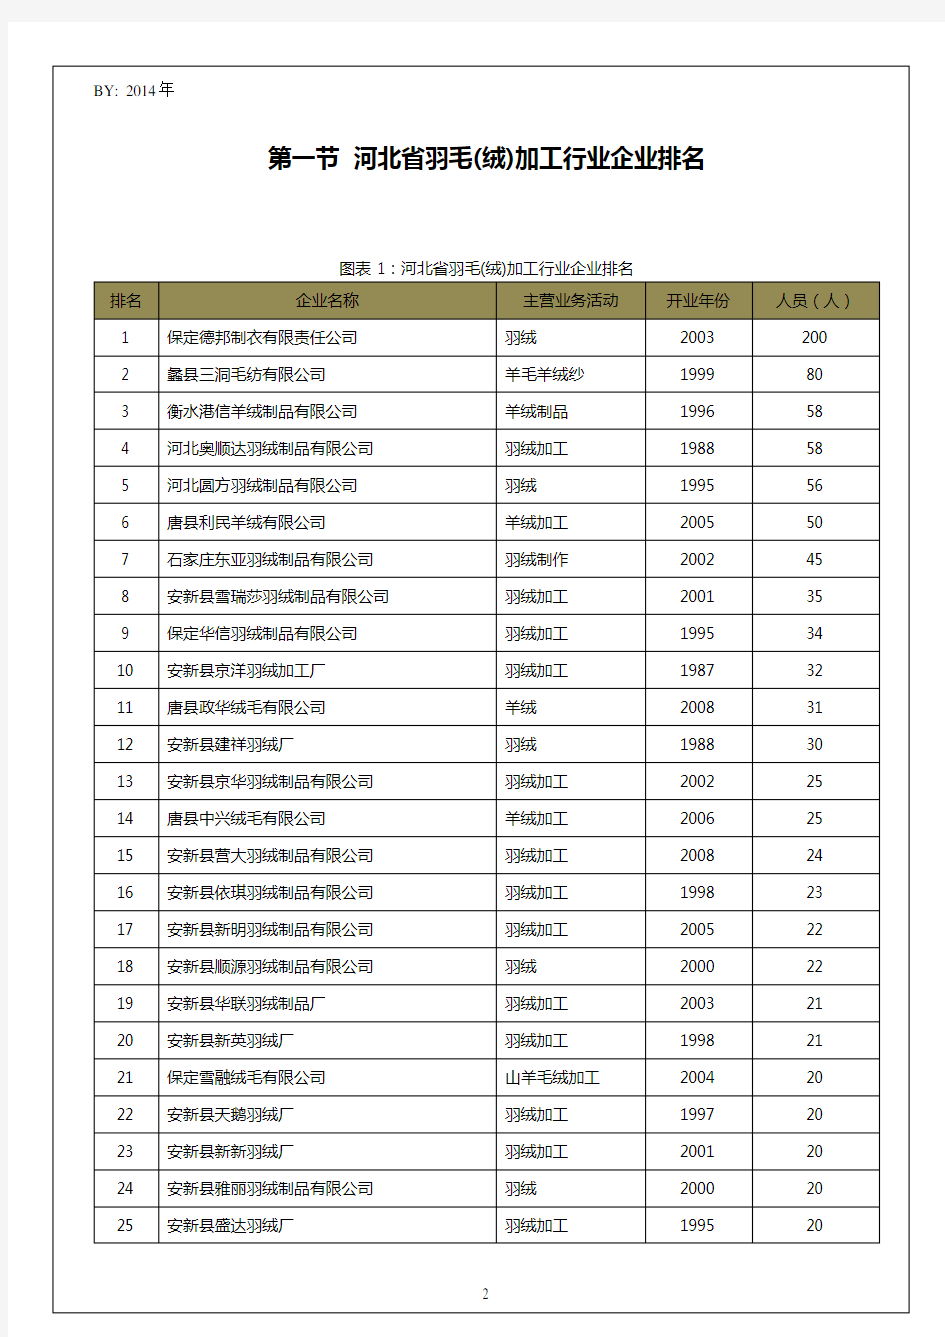 河北省羽毛(绒)加工行业企业排名统计报告